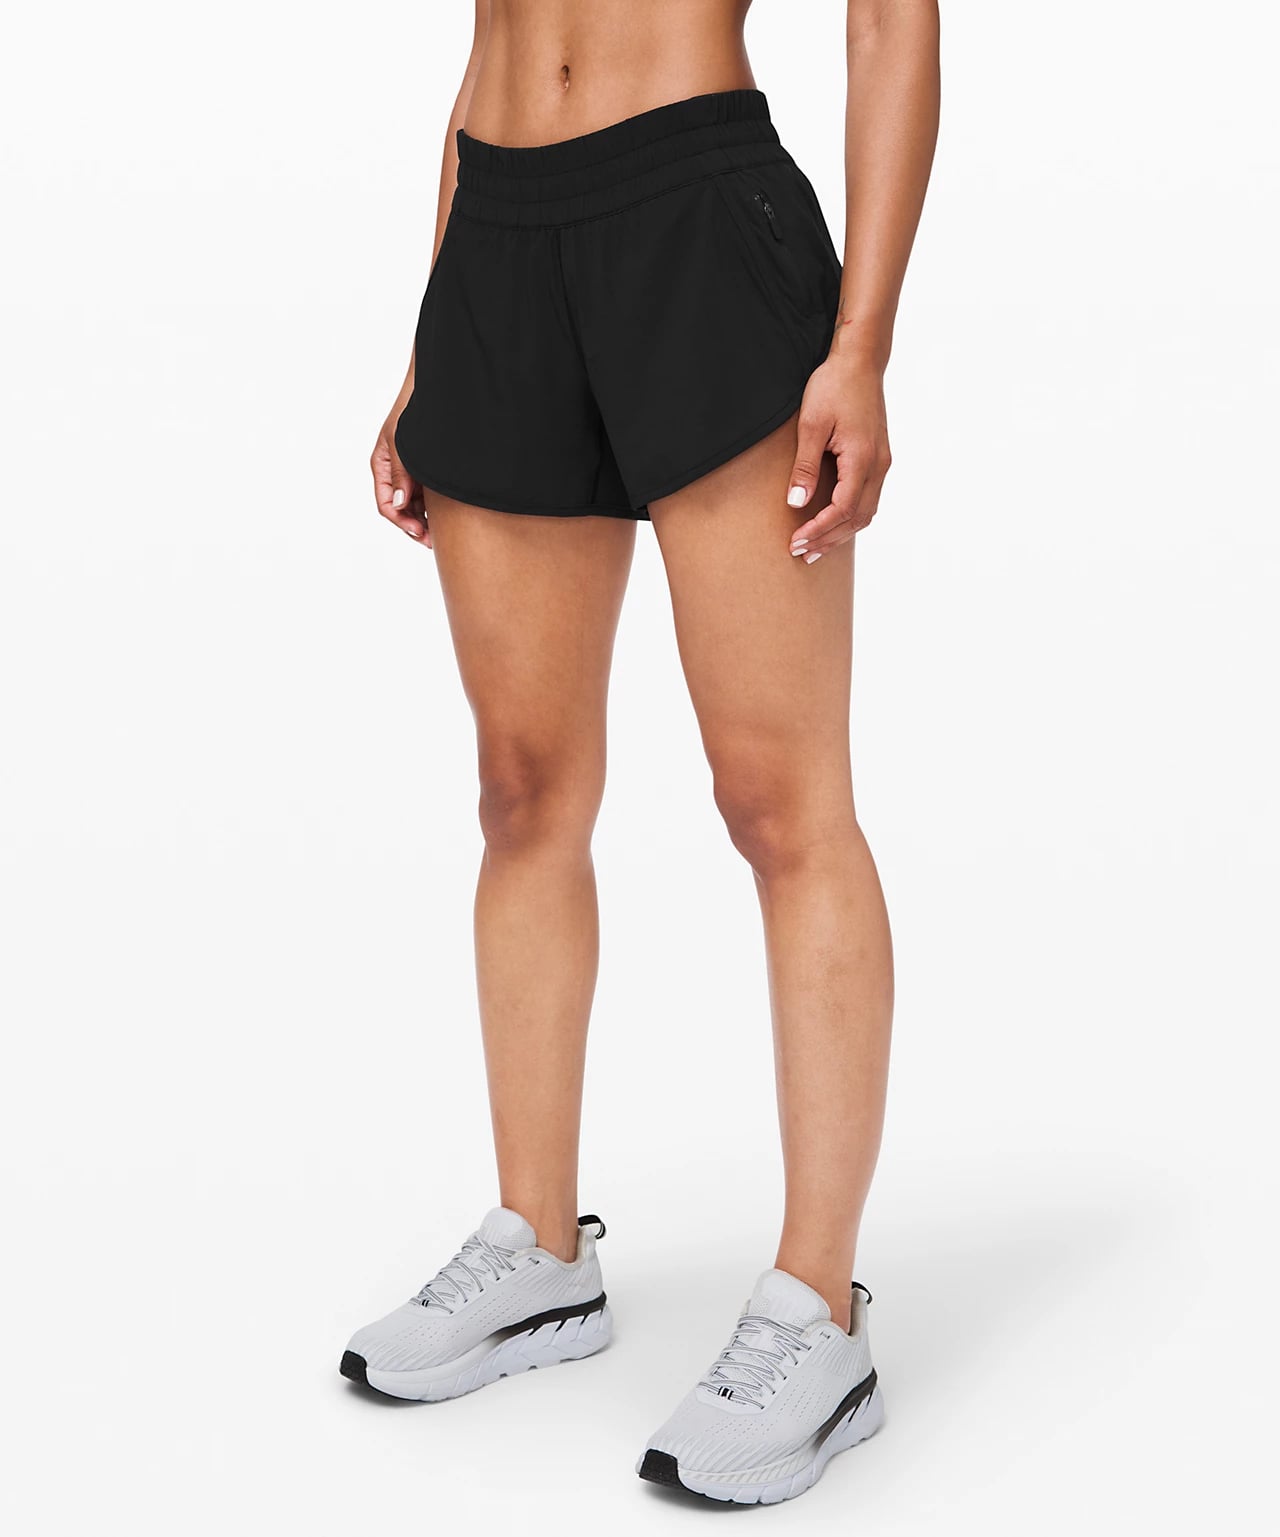 lulu athletic shorts